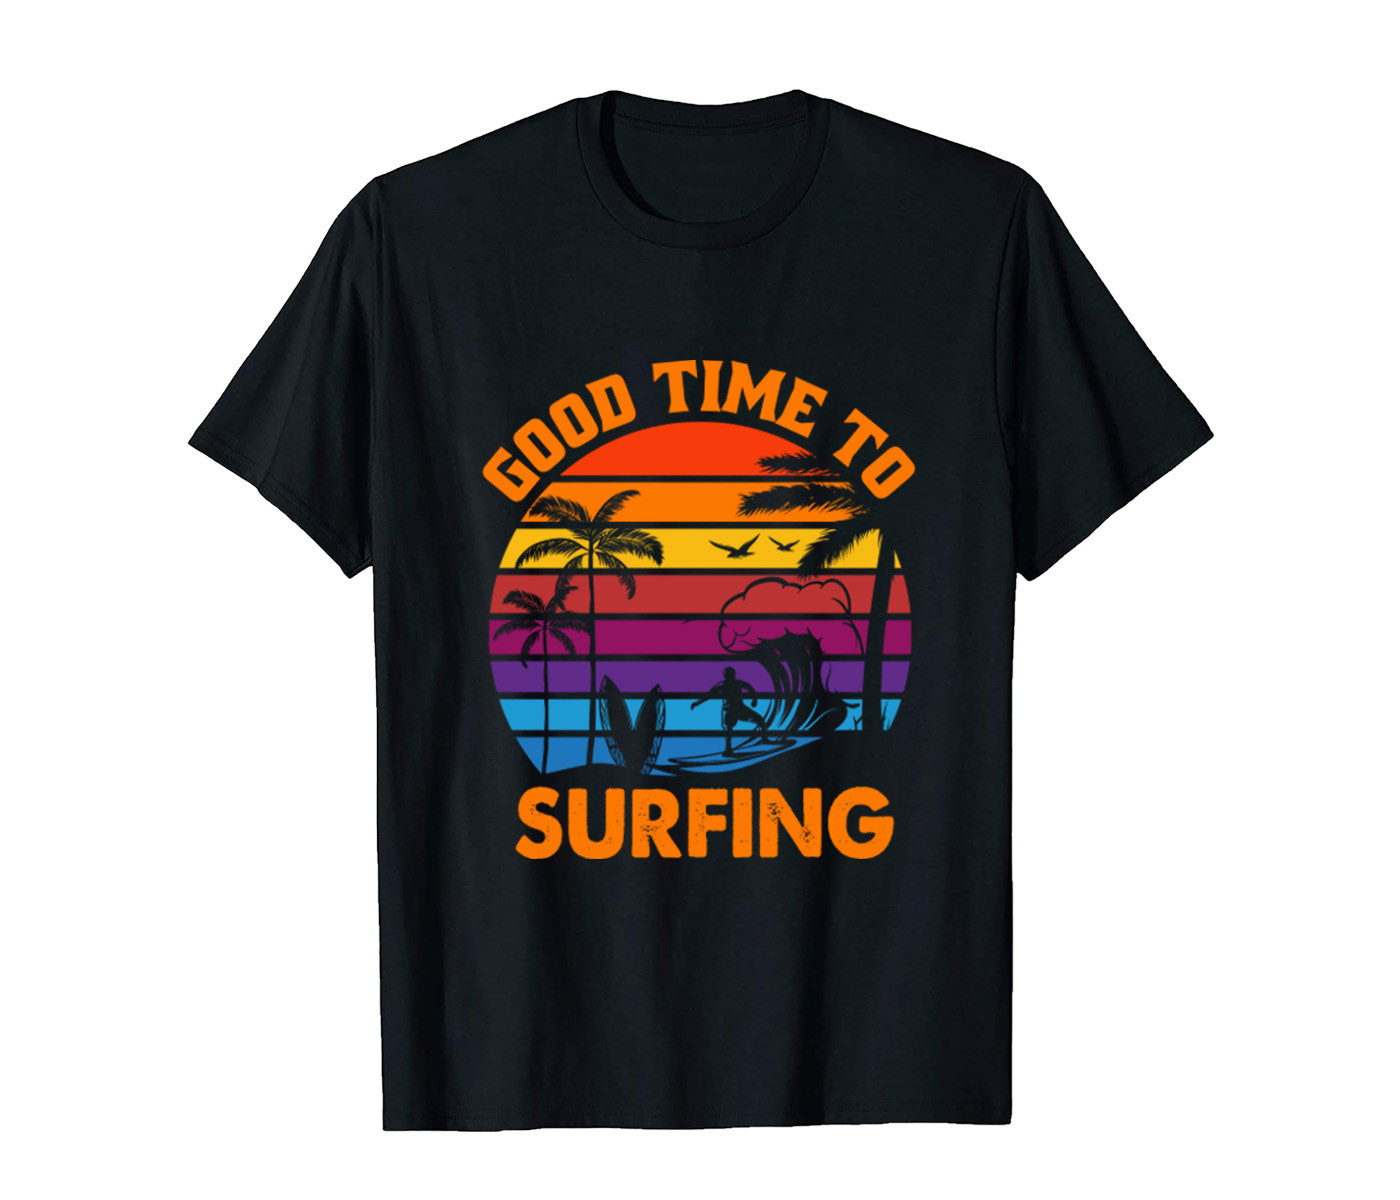 Summer T-shirt design Summer T-Shirt Vacation T-Shirt vintage t-shirt T-Shirt Design surfing t-shirt UNIQUE T-SHIRT DESIGN modern t-shirt sunshine t-shirt weekend t-shirt